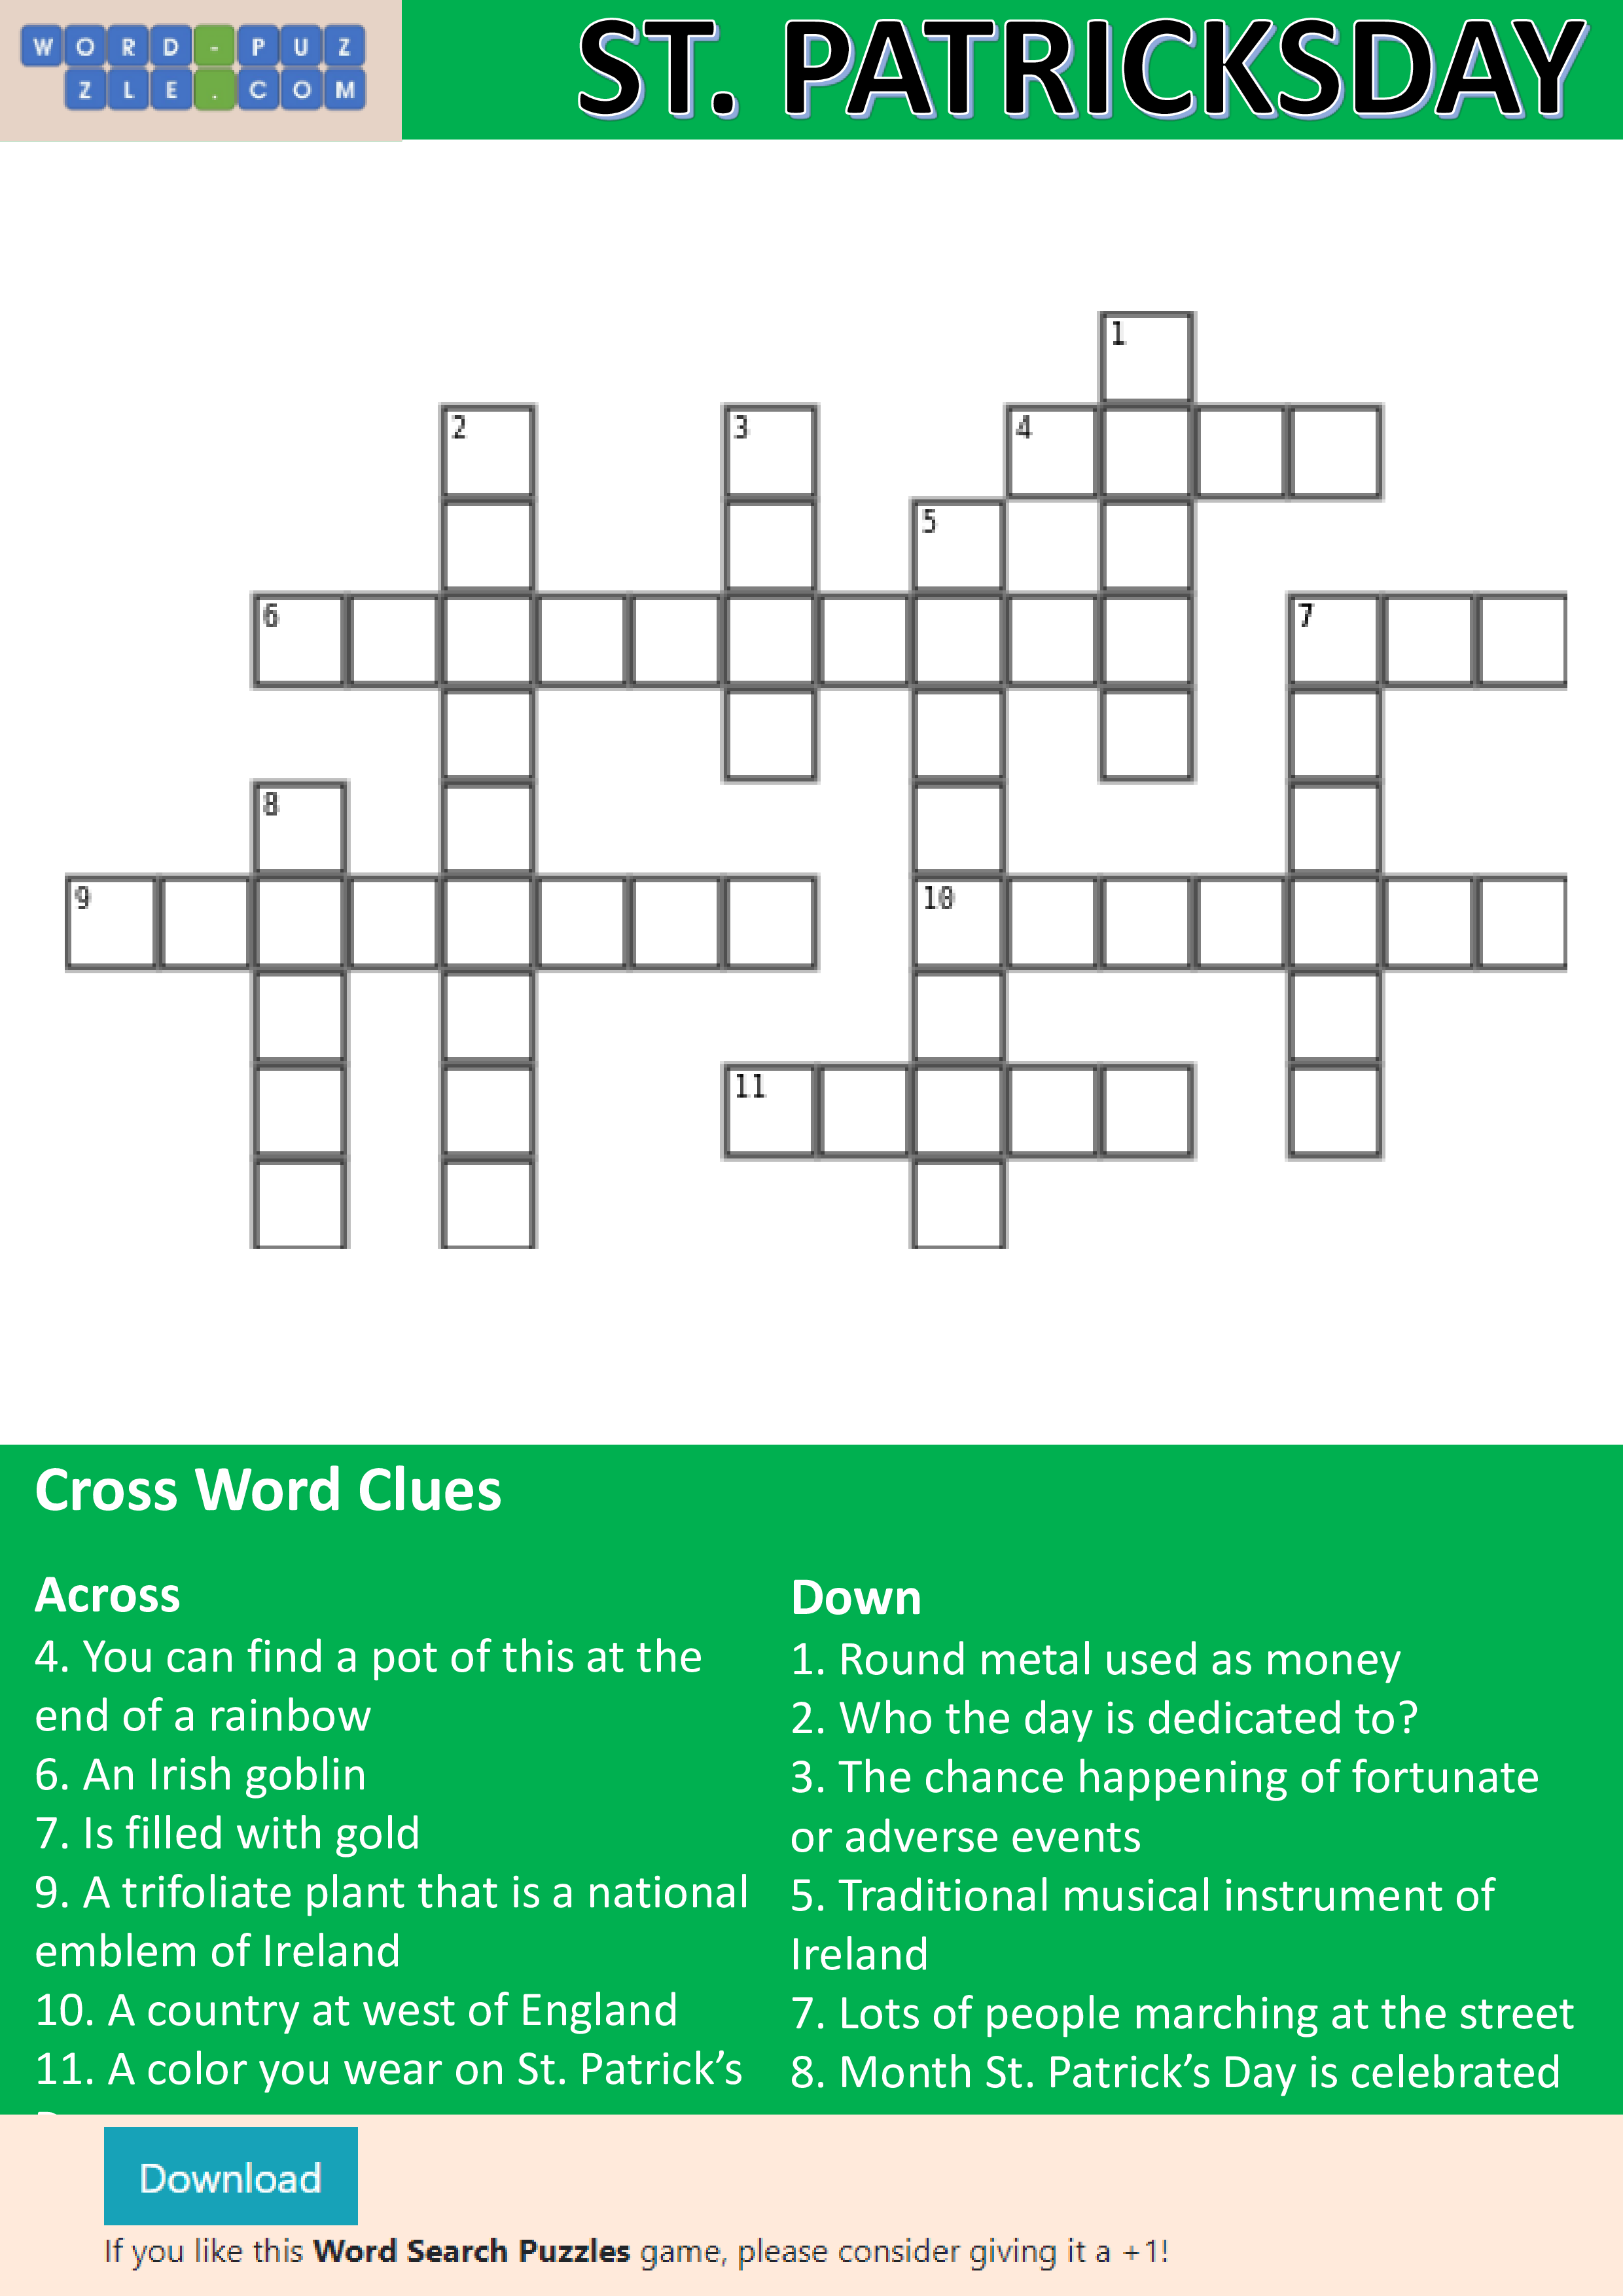 st patrick's day crossword puzzle plantilla imagen principal